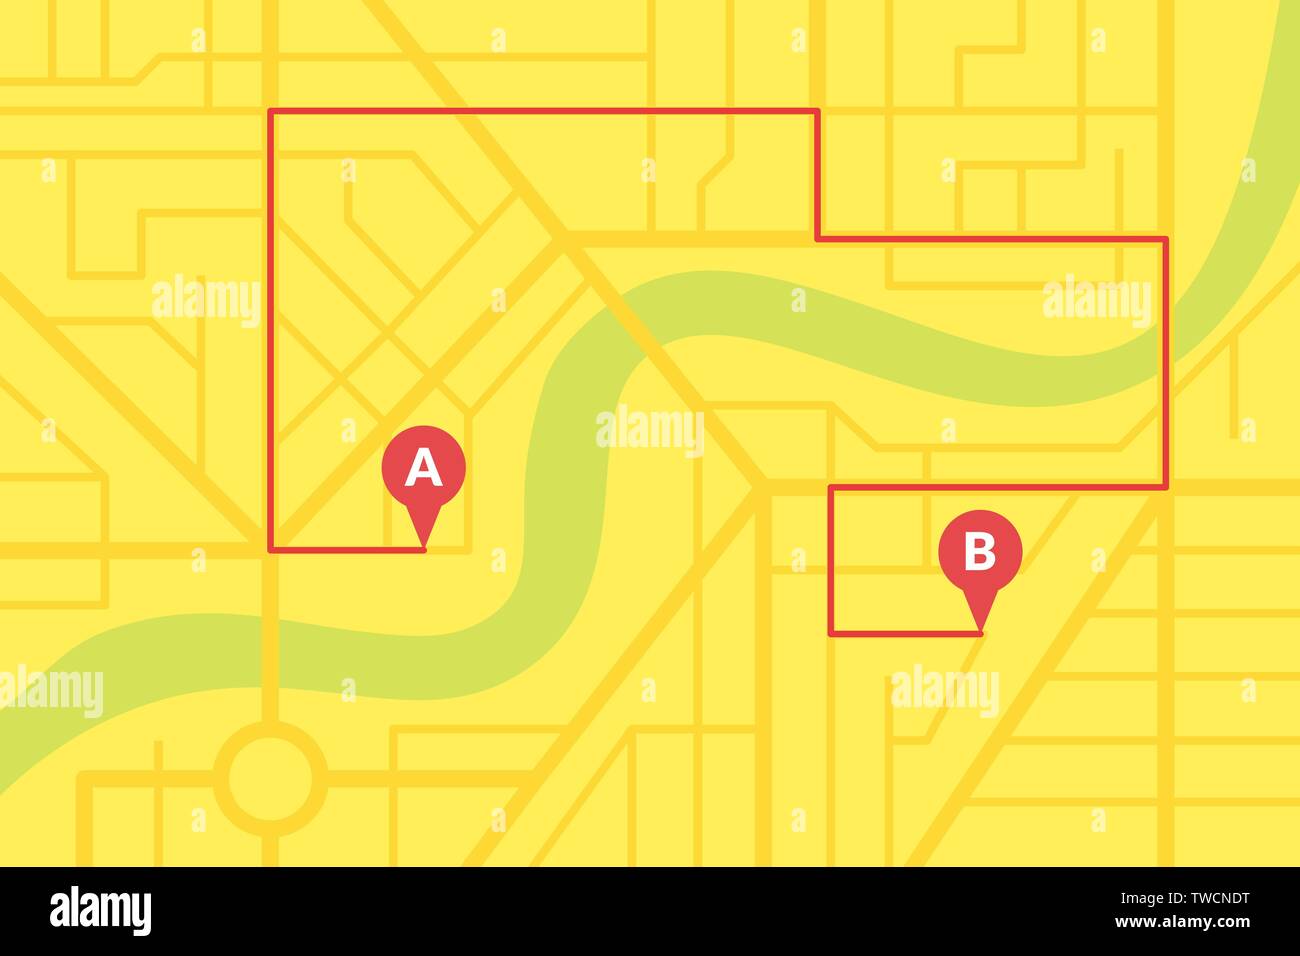 Stadt Stadtplan plan mit GPS-Pins und Navigation Route von A nach B Punkt Marker. Vector gelb Farbe eps Abbildung: Schema Stock Vektor